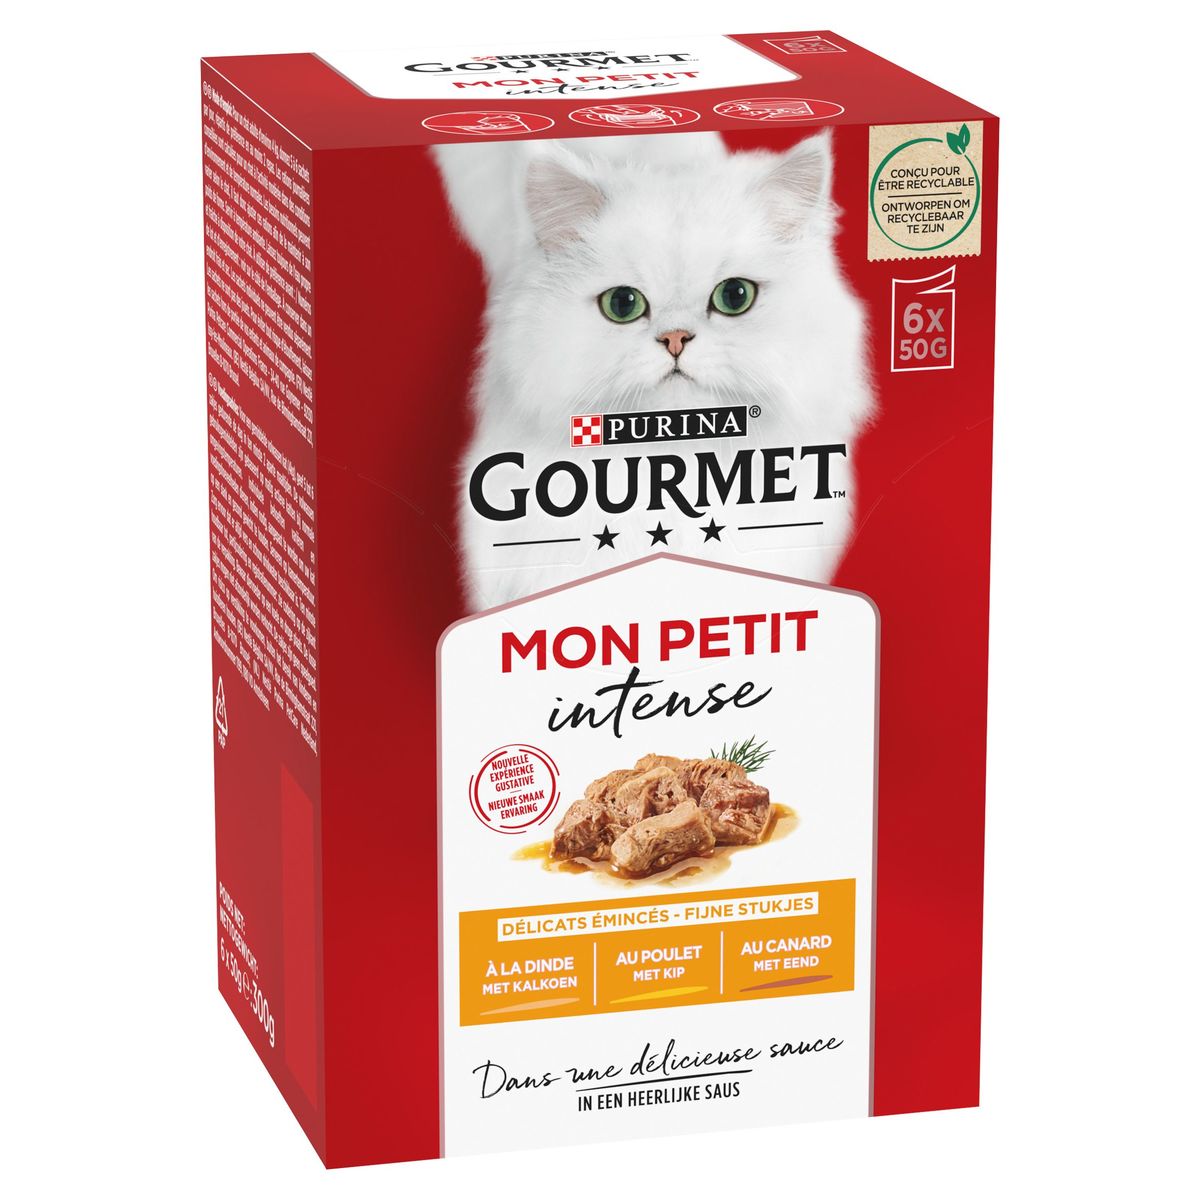 Gourmet Mon Petit Intense met Kalkoen, met Kip, met Eend 6 x 50 g